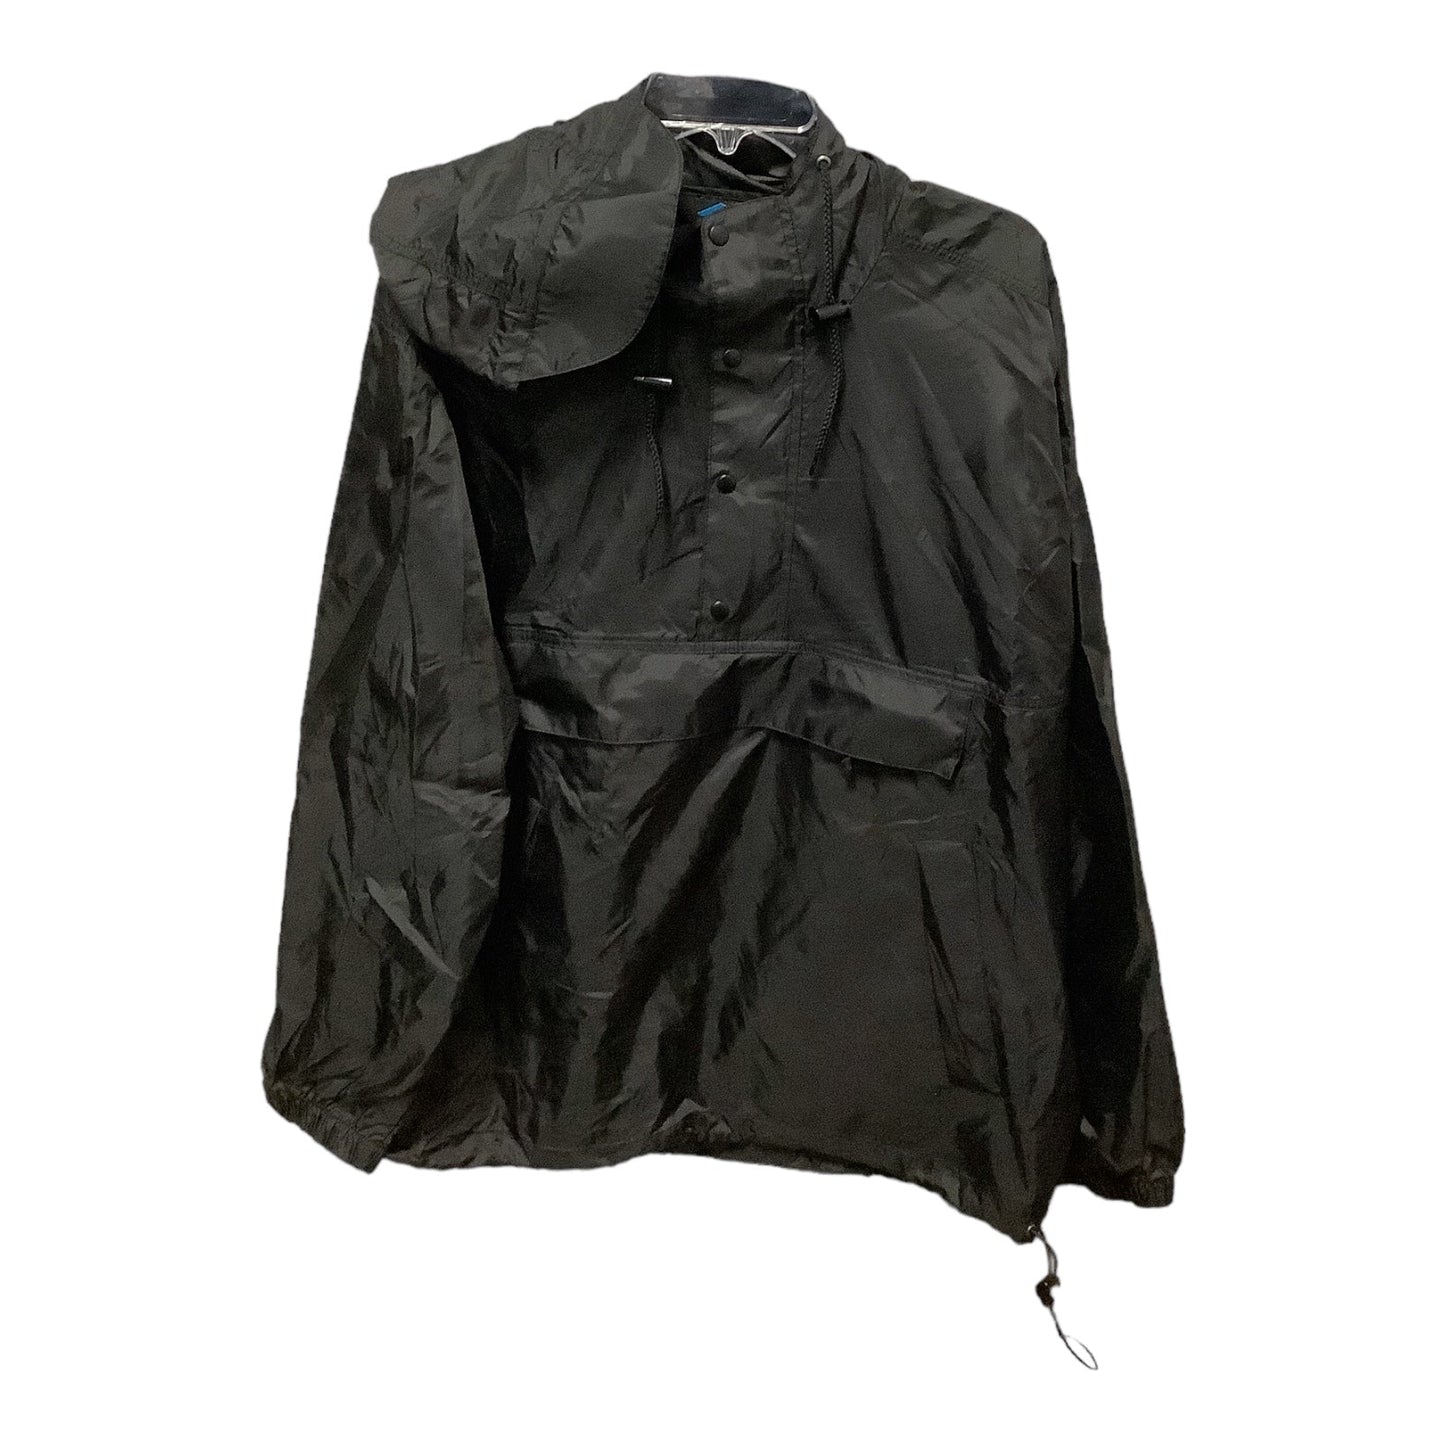 Jacket Windbreaker By Tri-Mountain Size: L